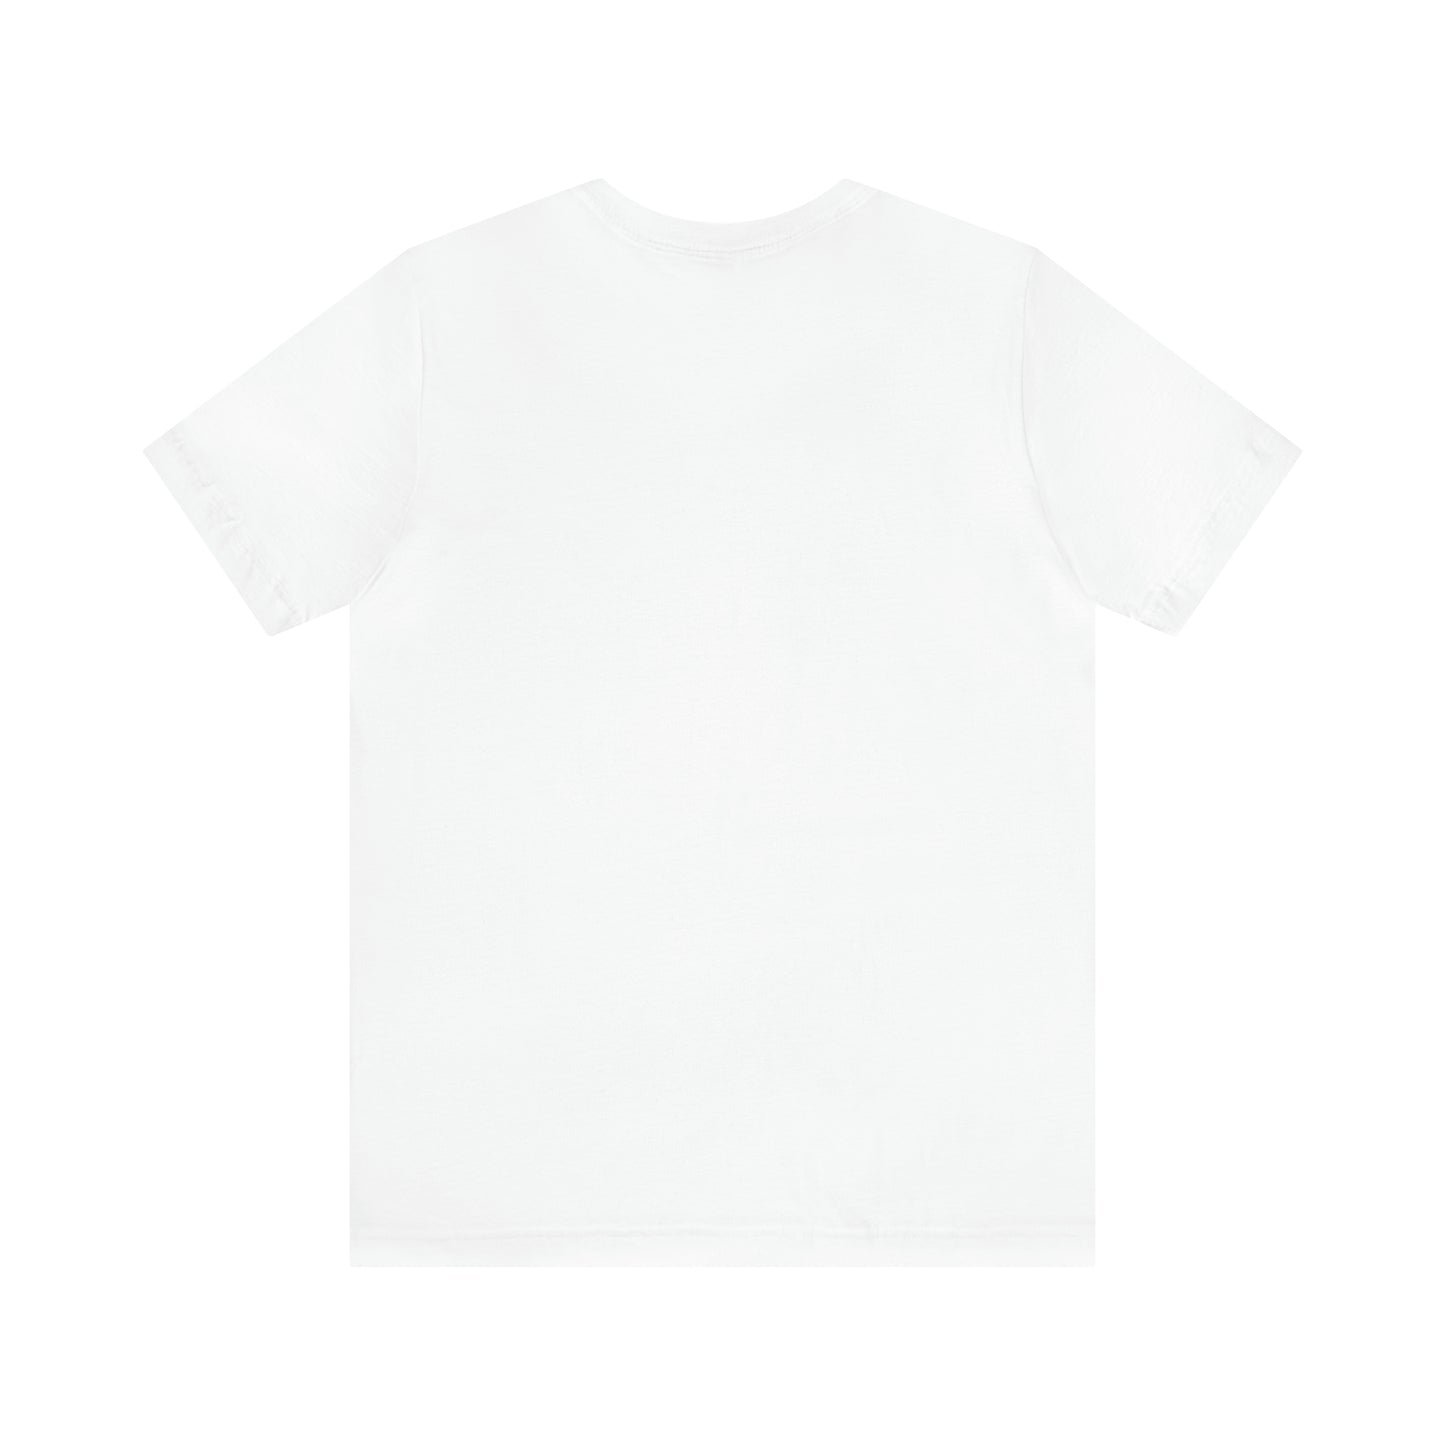 Reader T-Shirt | For Bookworms | Reader Gift Idea T-Shirt Petrova Designs